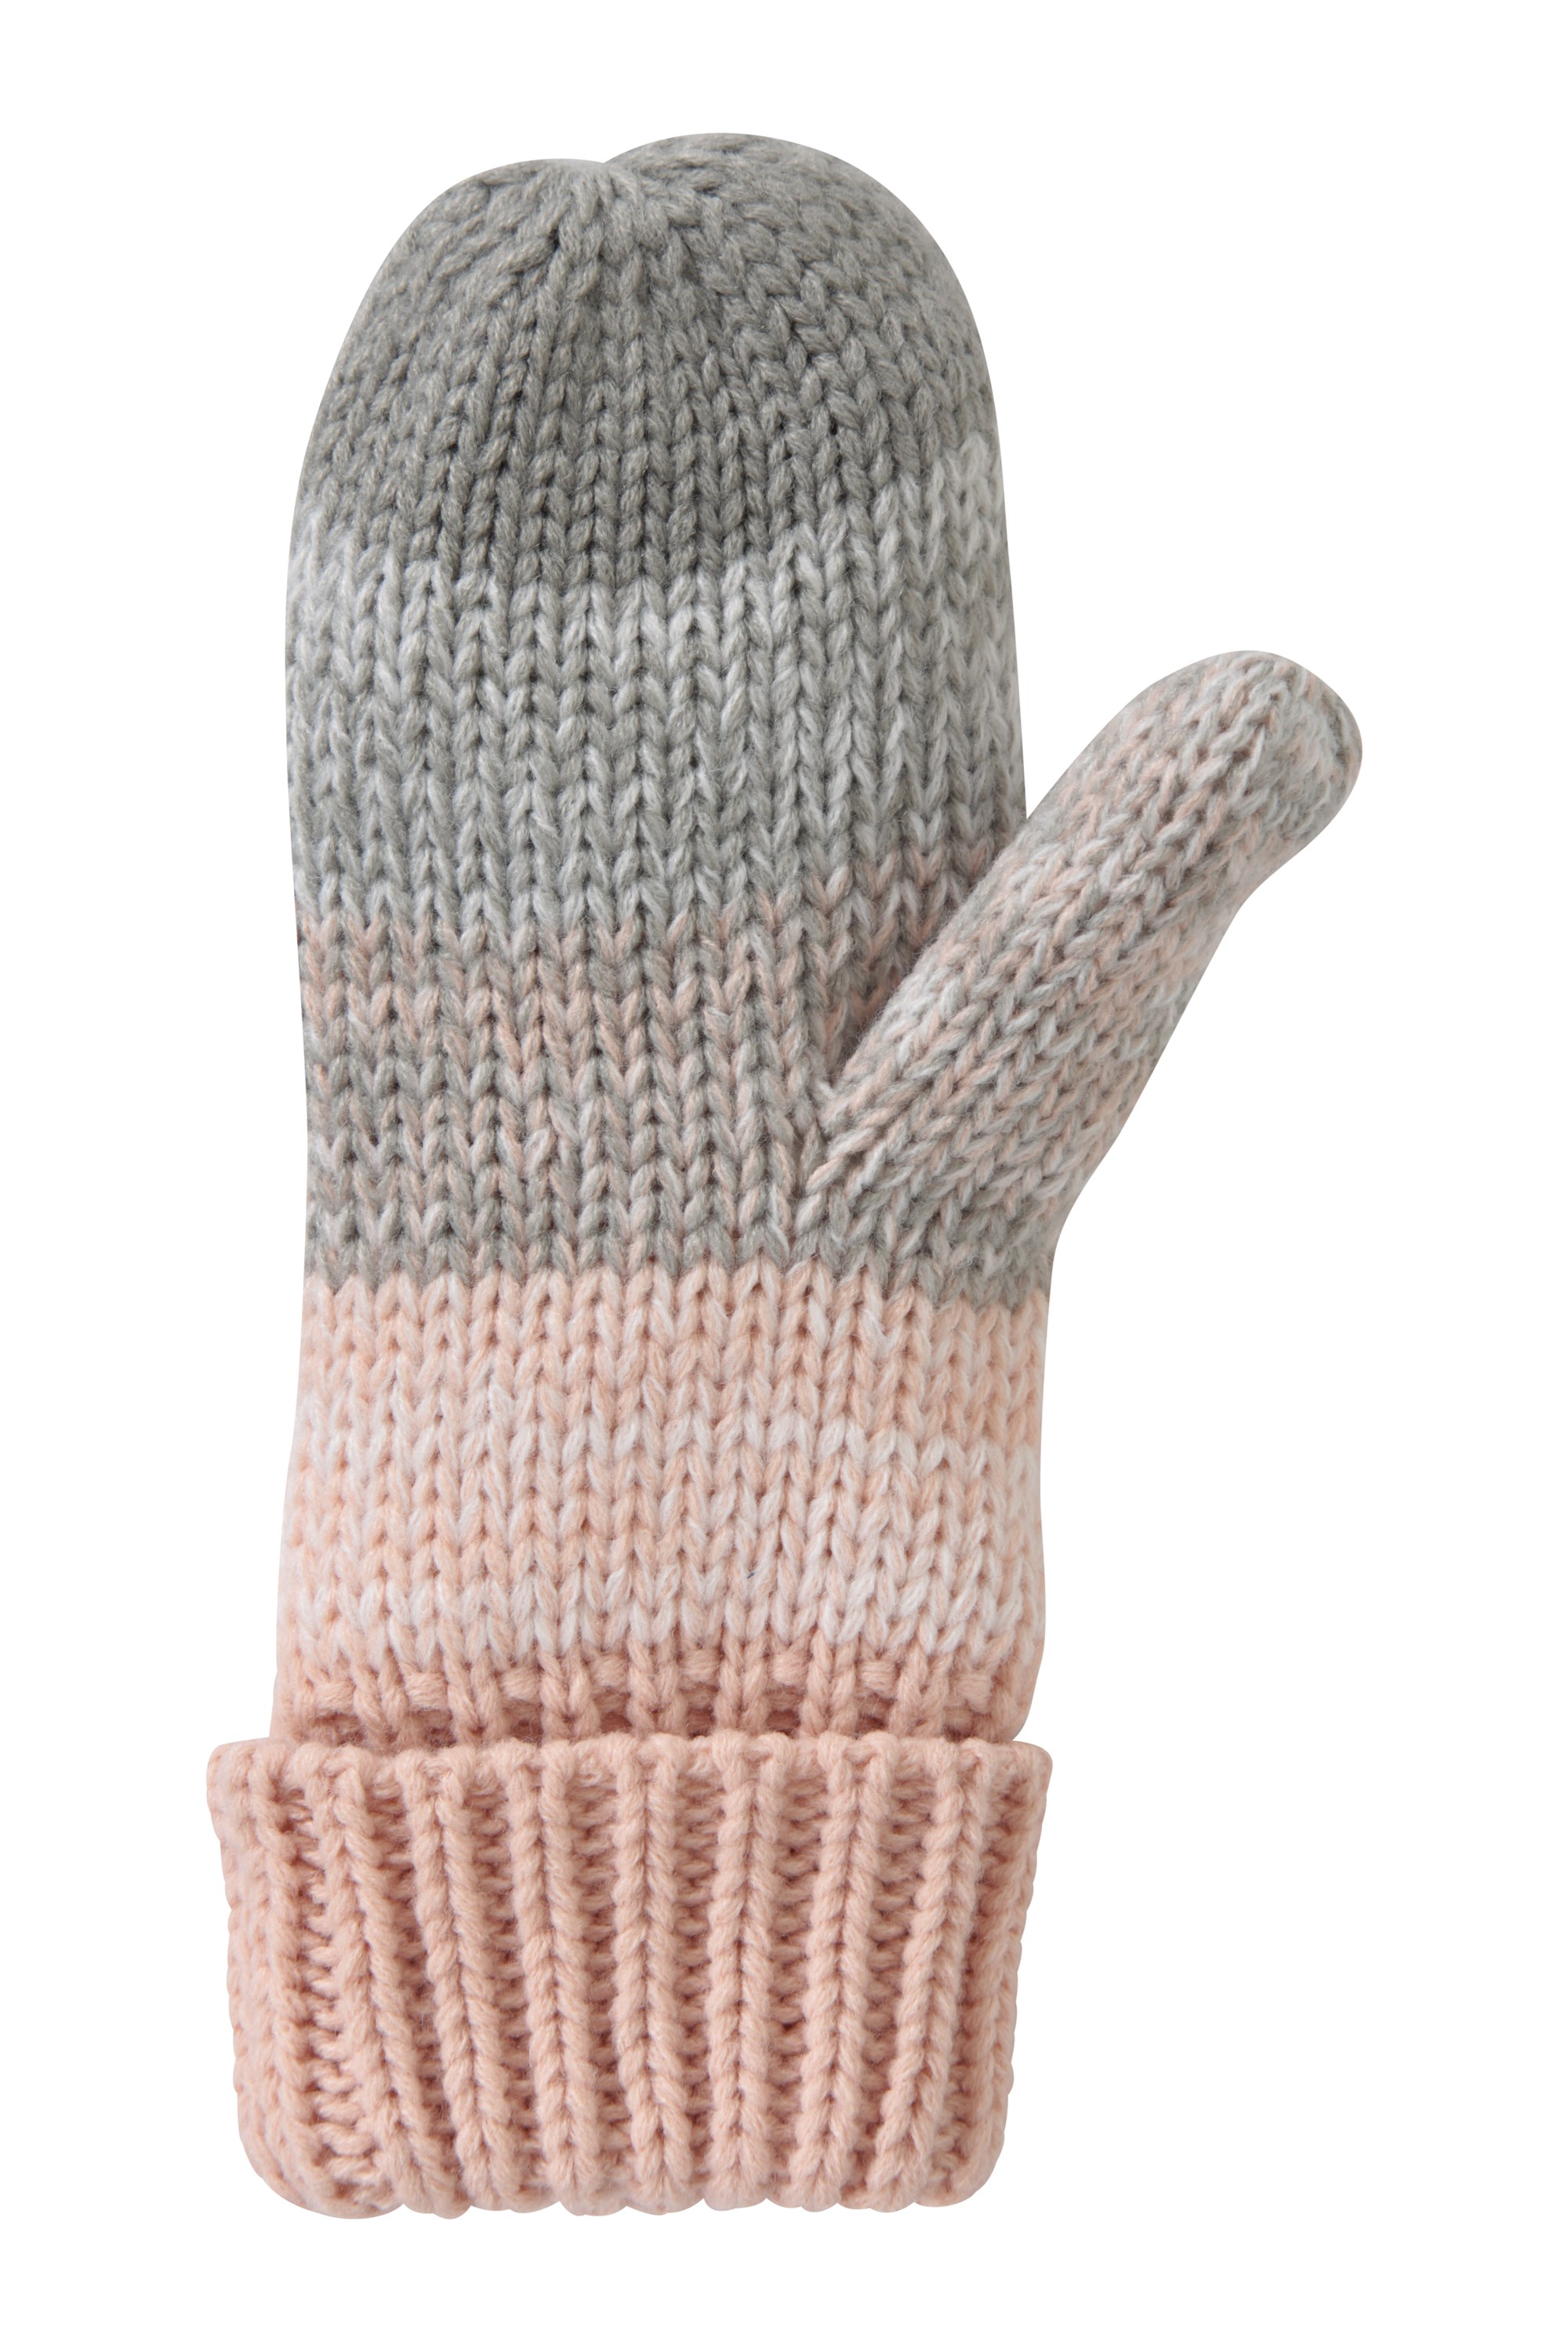 Mountain Warehouse Wms Salzburg Knitted Stripe Mitten Gloves 